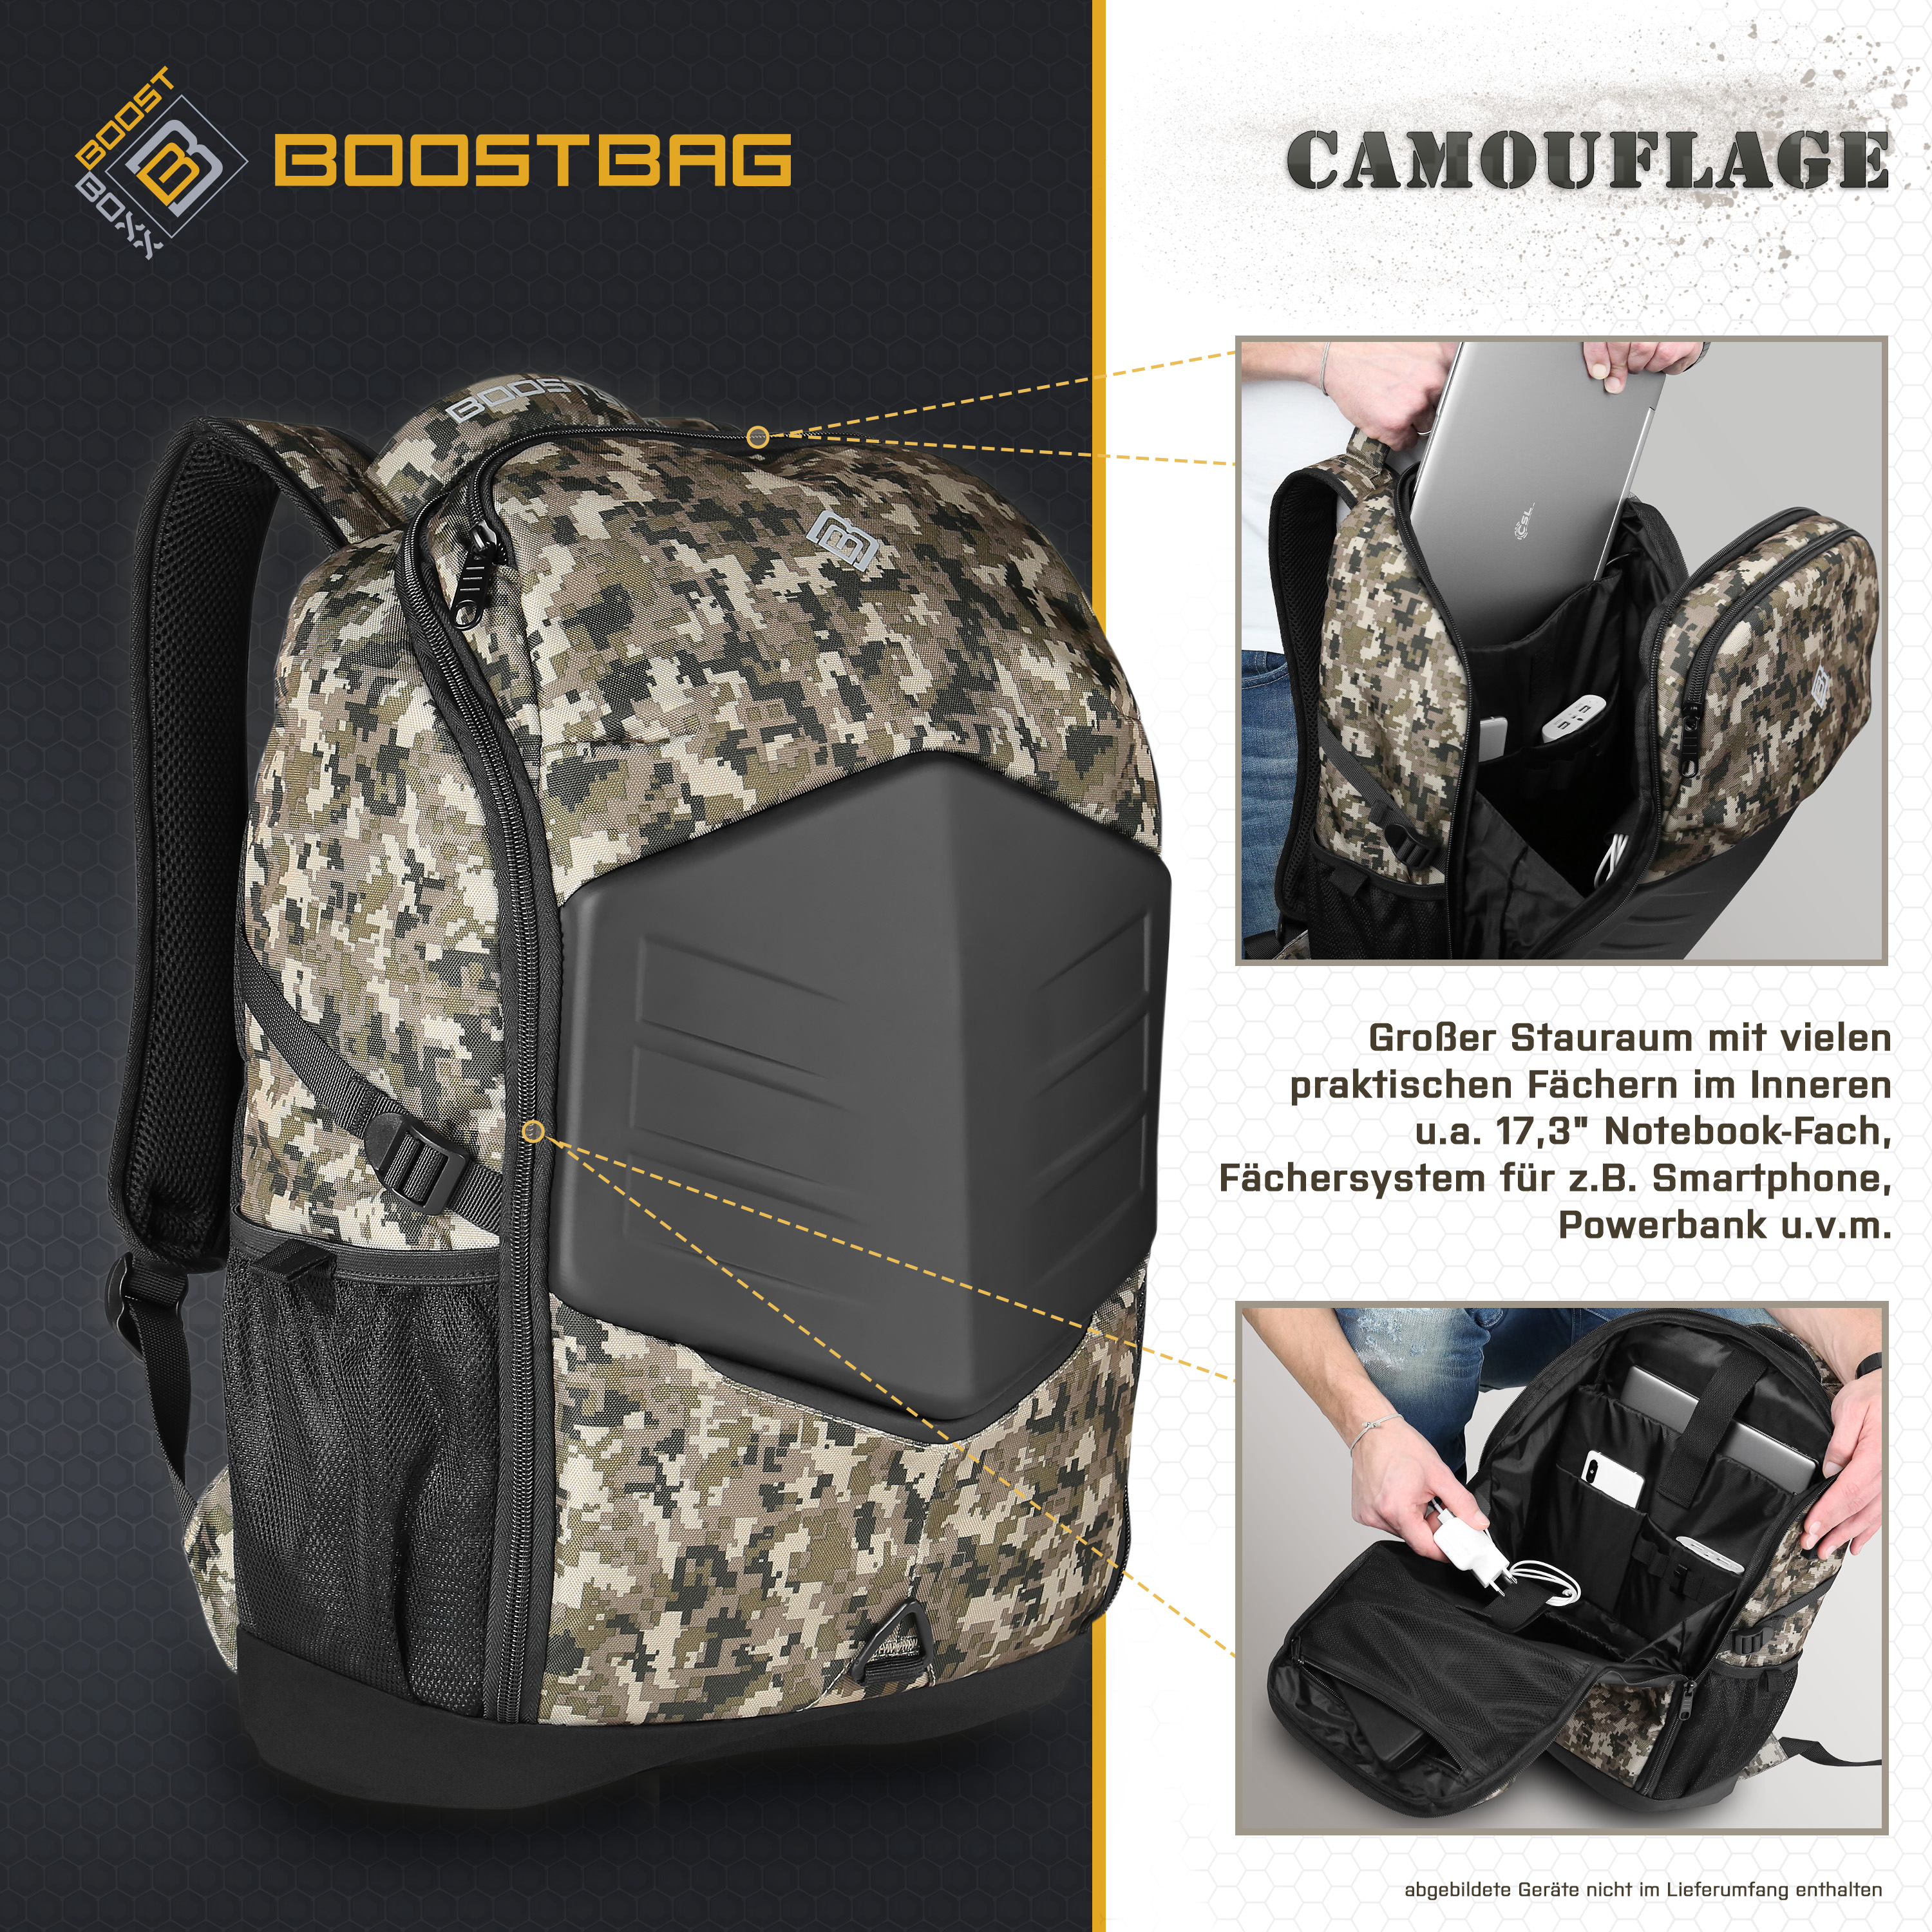 BOOSTBOXX BoostBag Camouflage Materialmix, für Rucksack Universal army Notebook-Rucksack